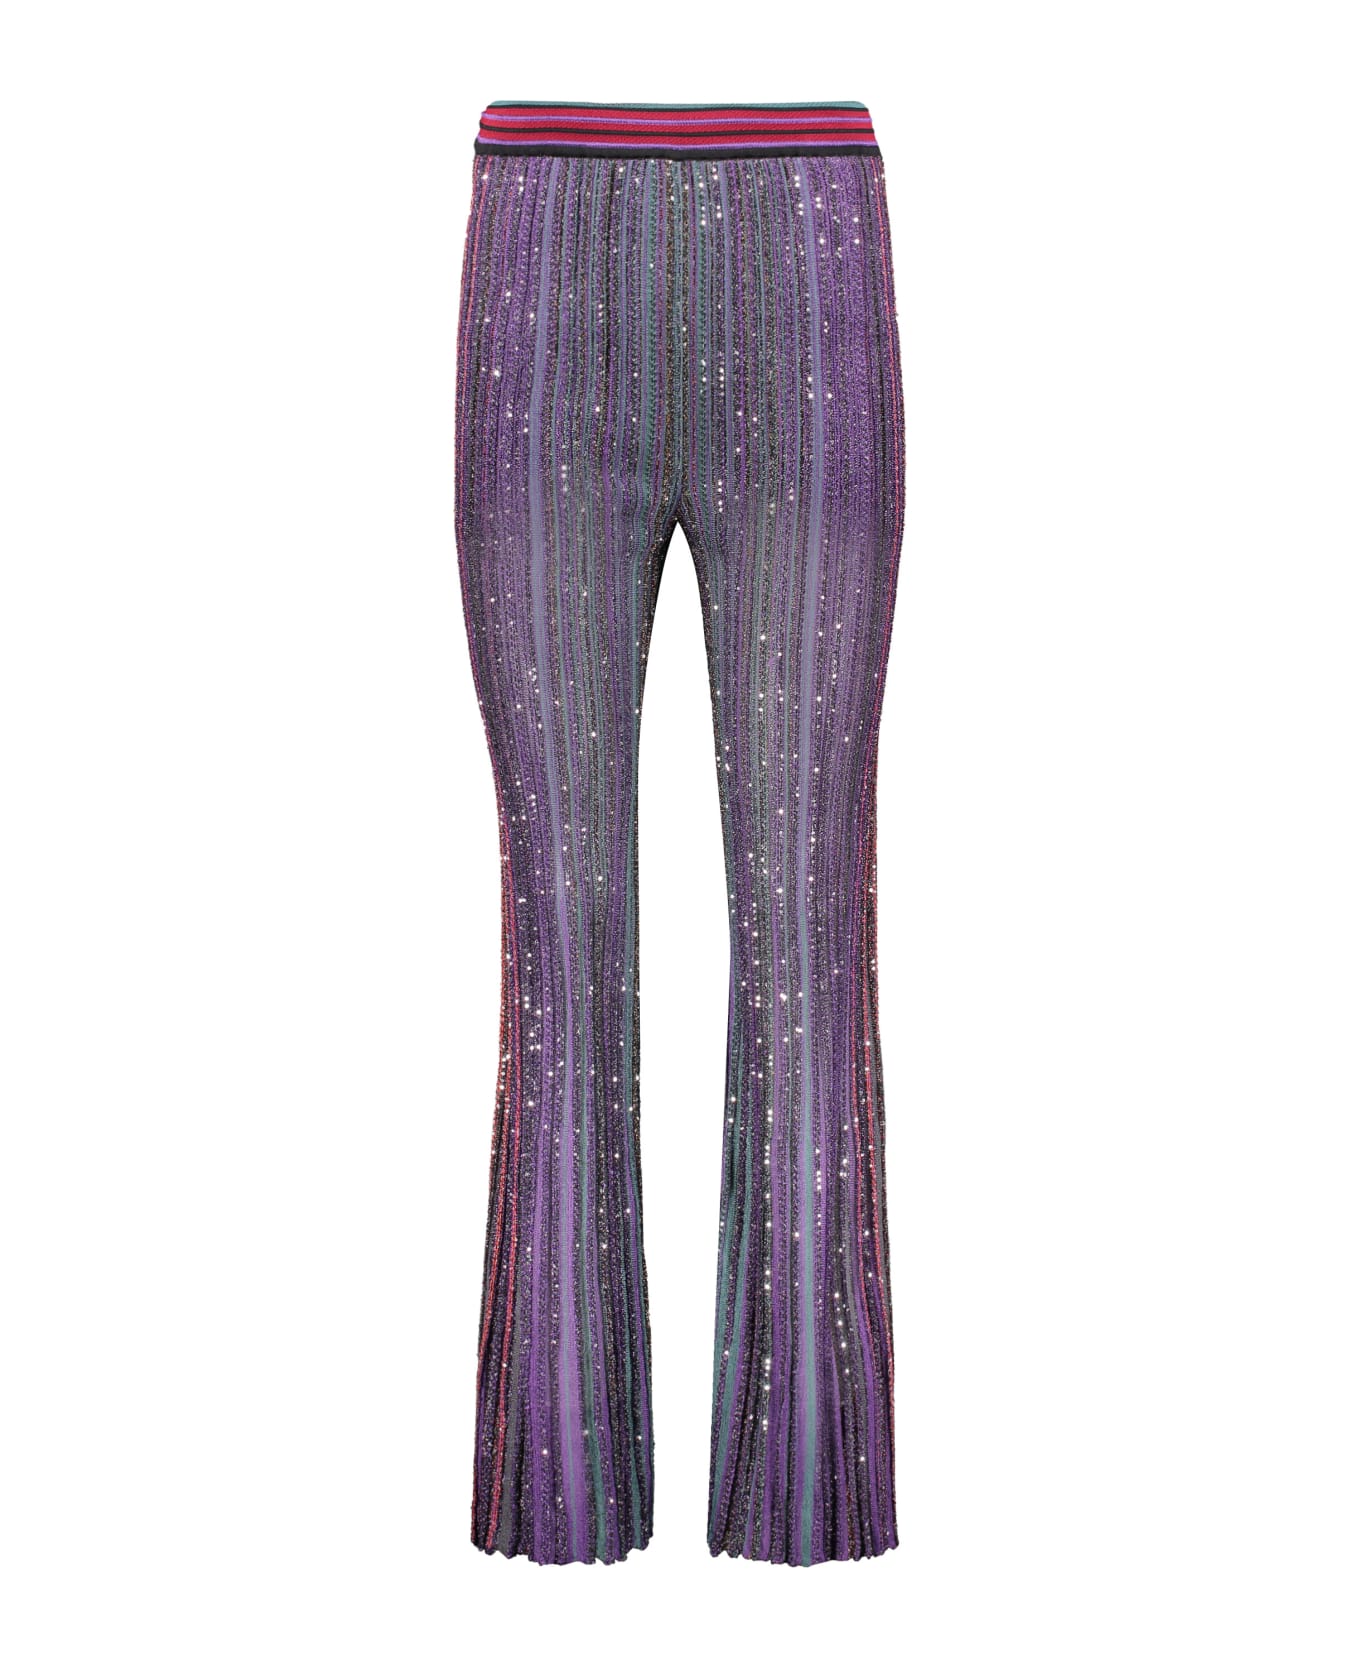 Missoni Lurex Details Knit Trousers - Multicolor